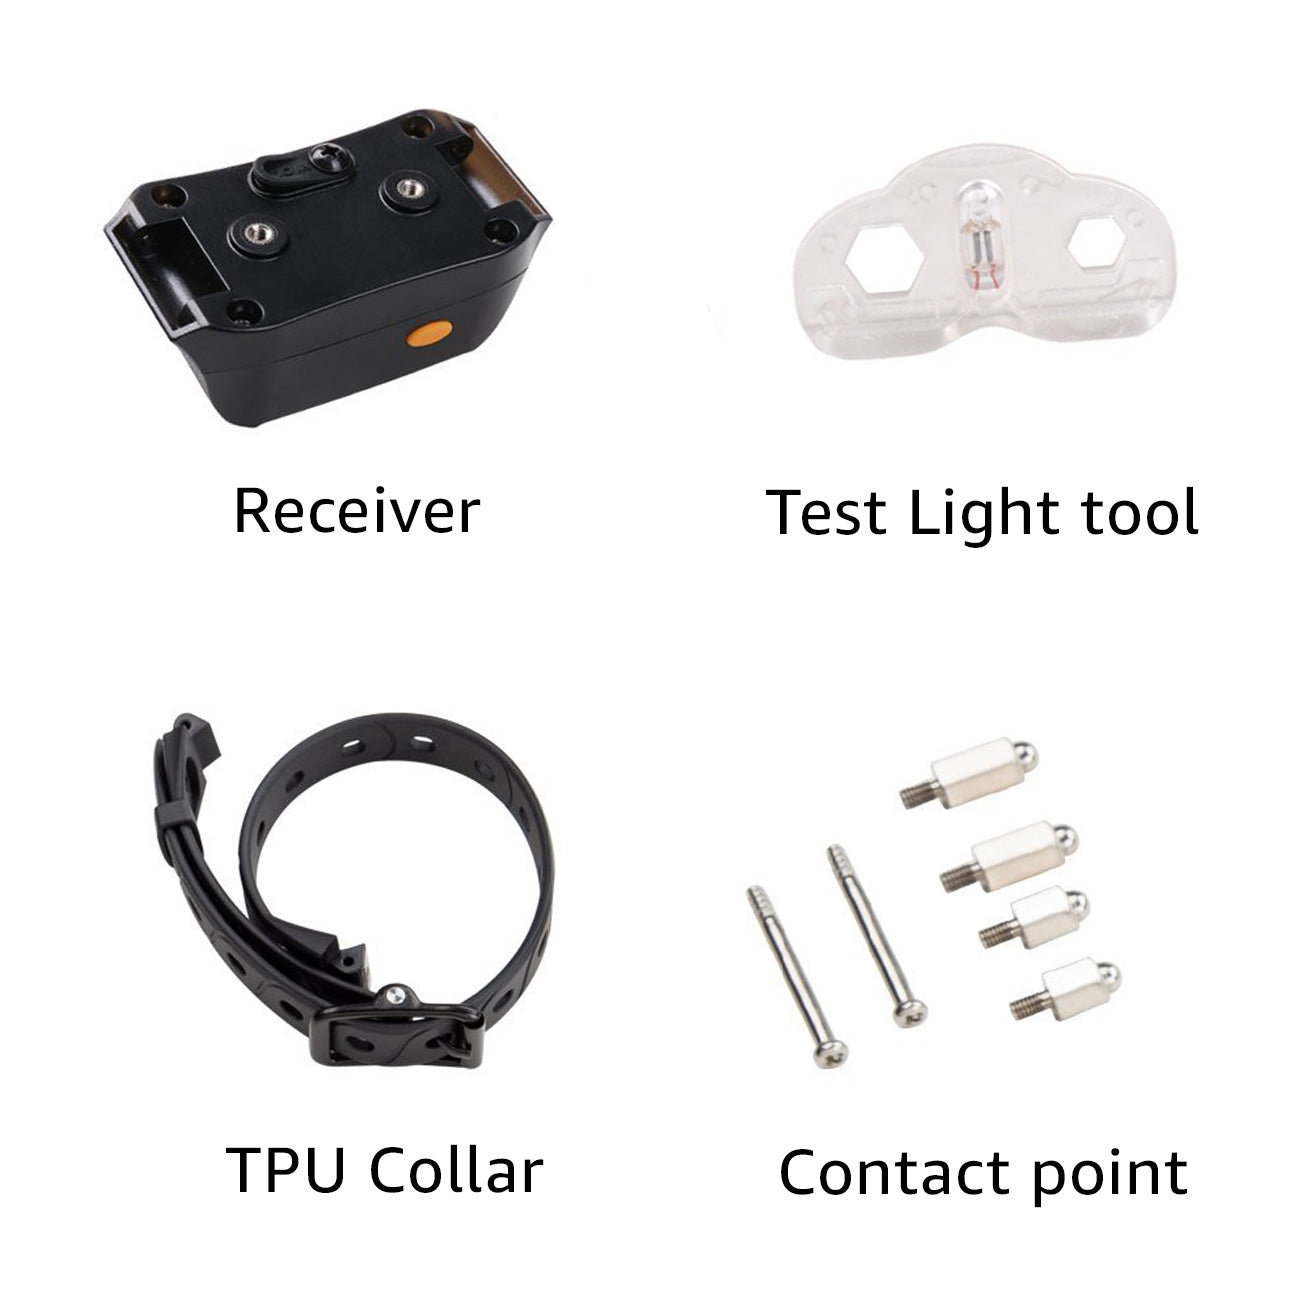 PACKAGE: Receiver Collar, Adjustable TPU Strap (Black), Test Light, Set of Metal Probes